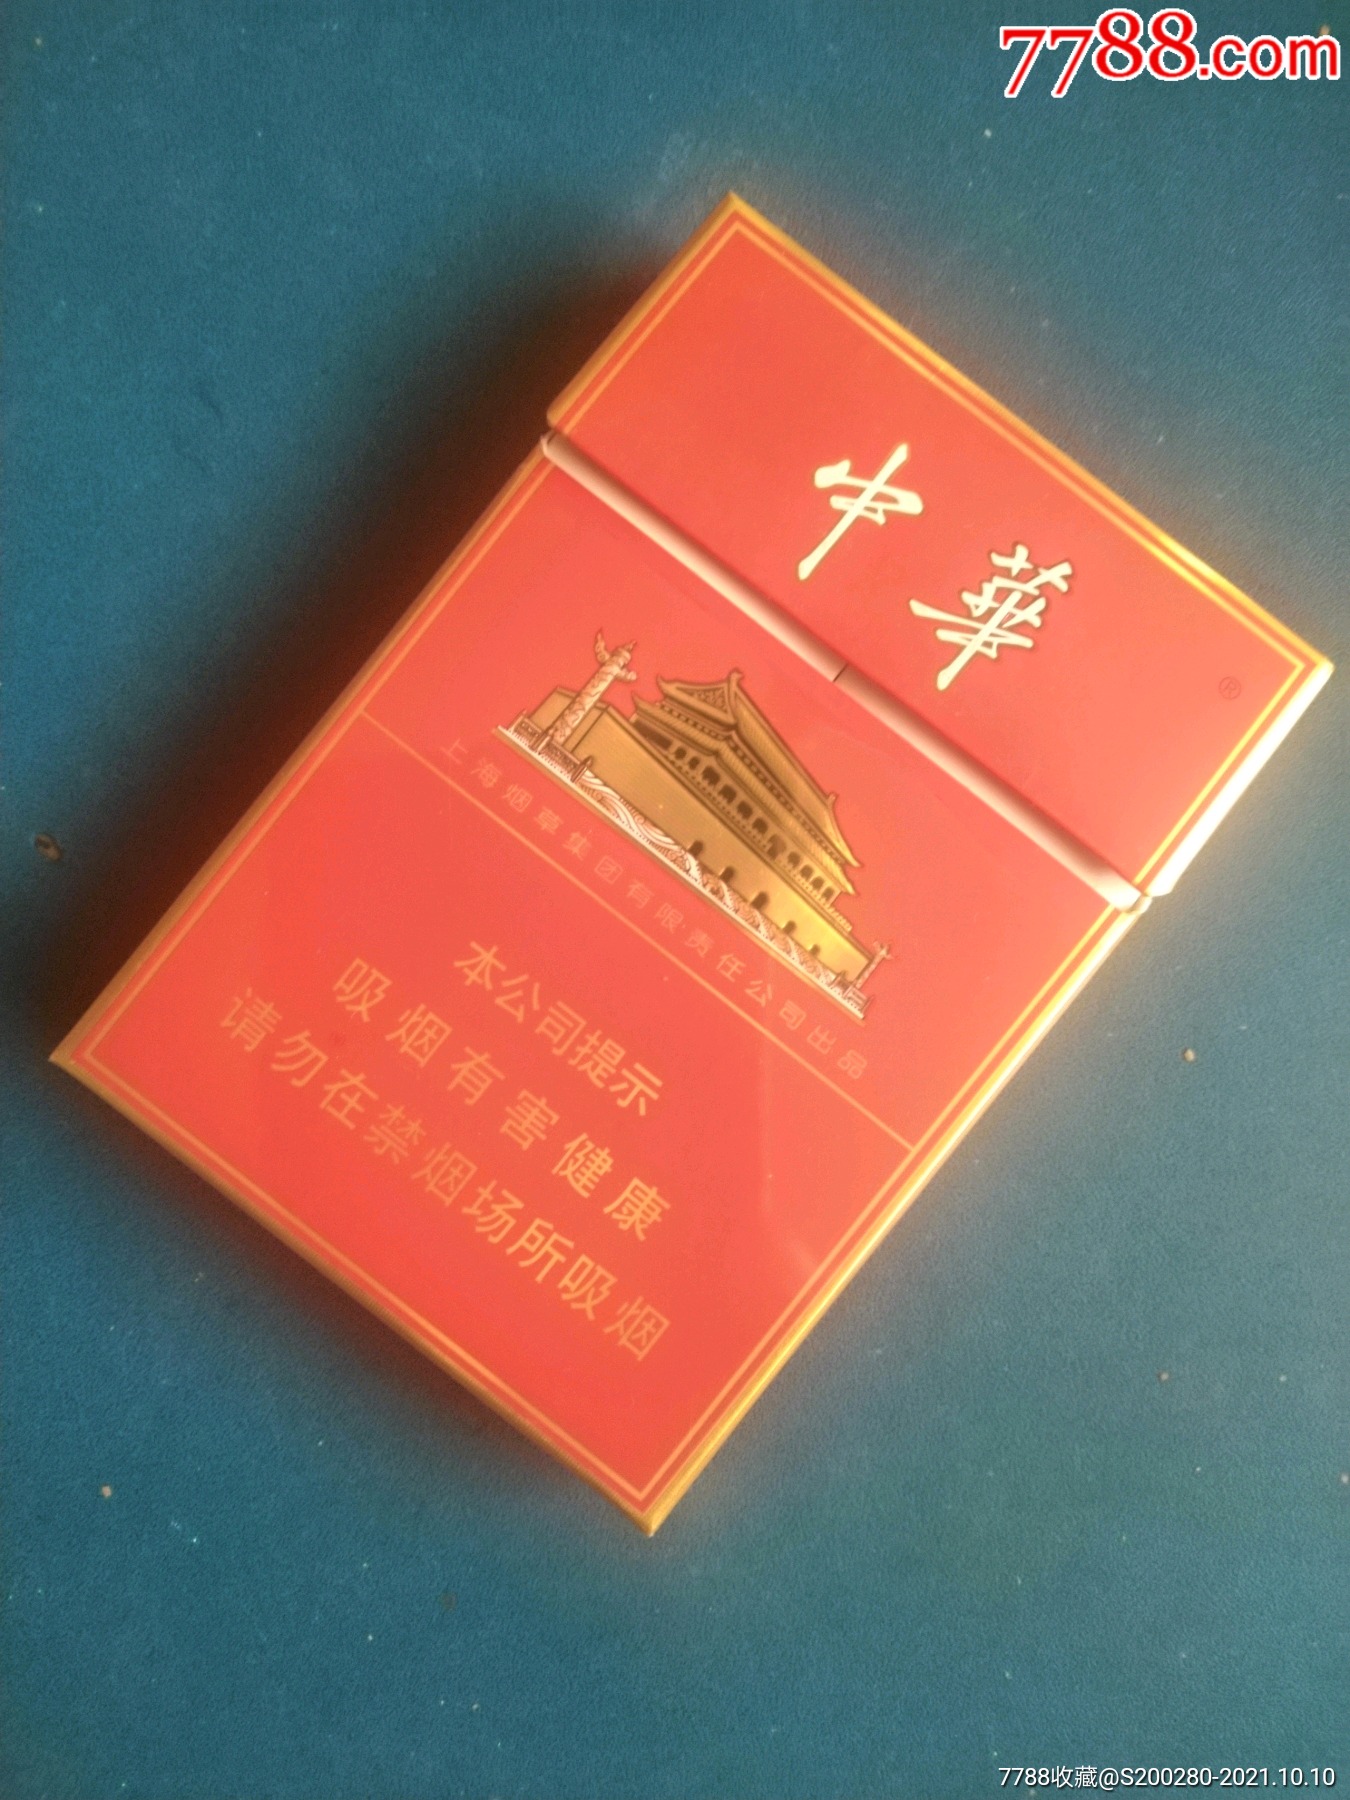 中华烟50元一包图片